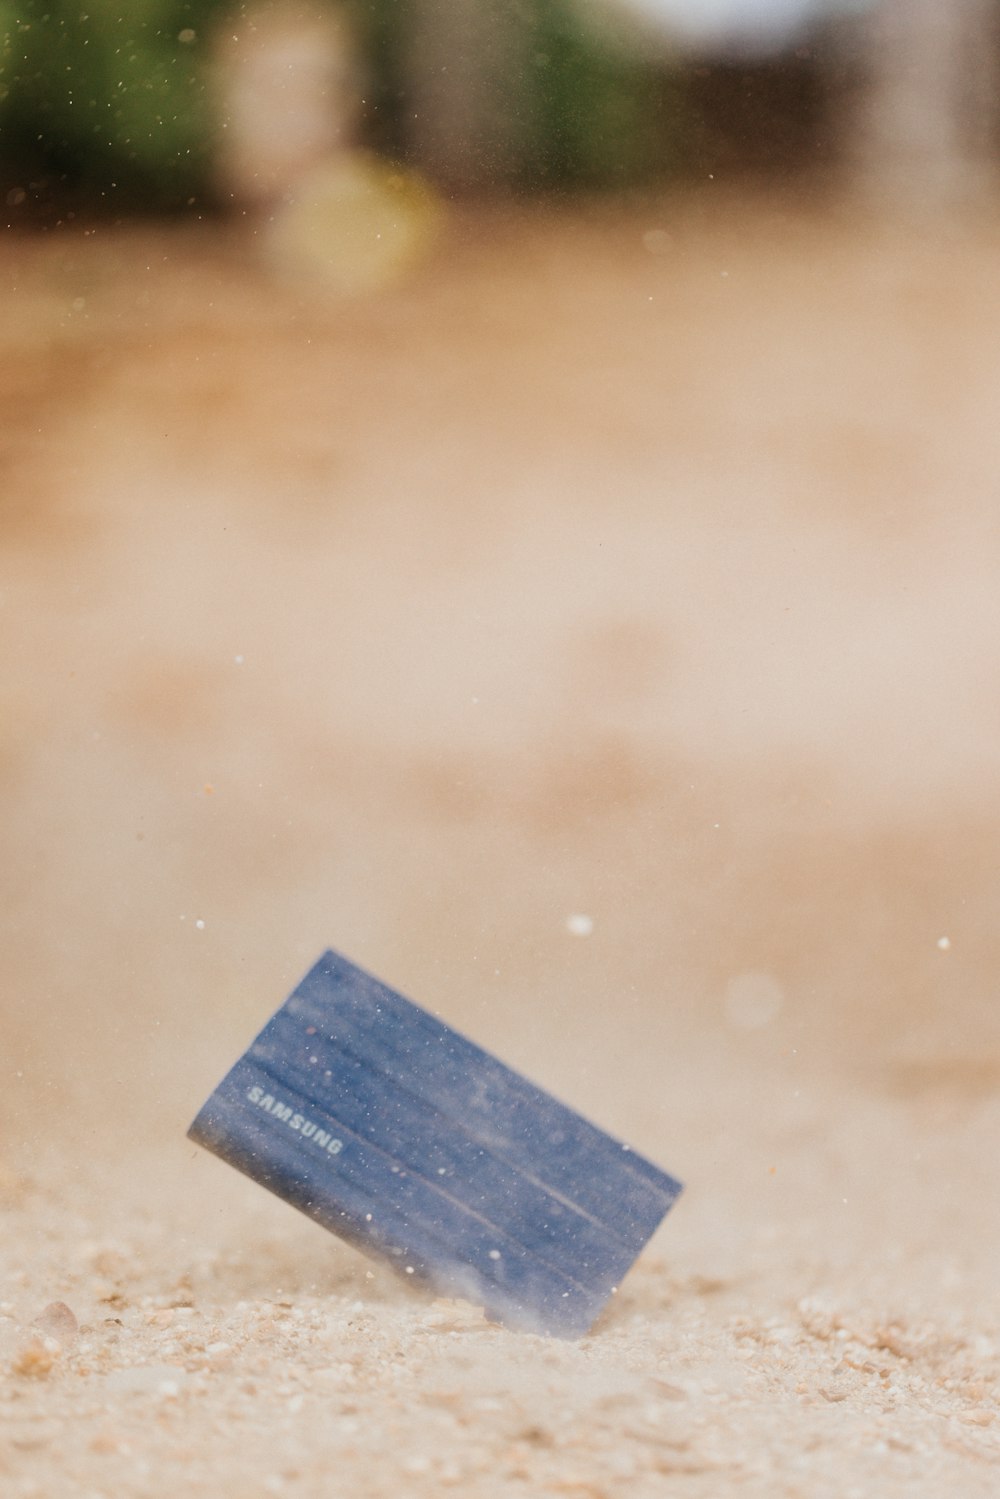 ein blaues rechteckiges Objekt auf einer Oberfläche